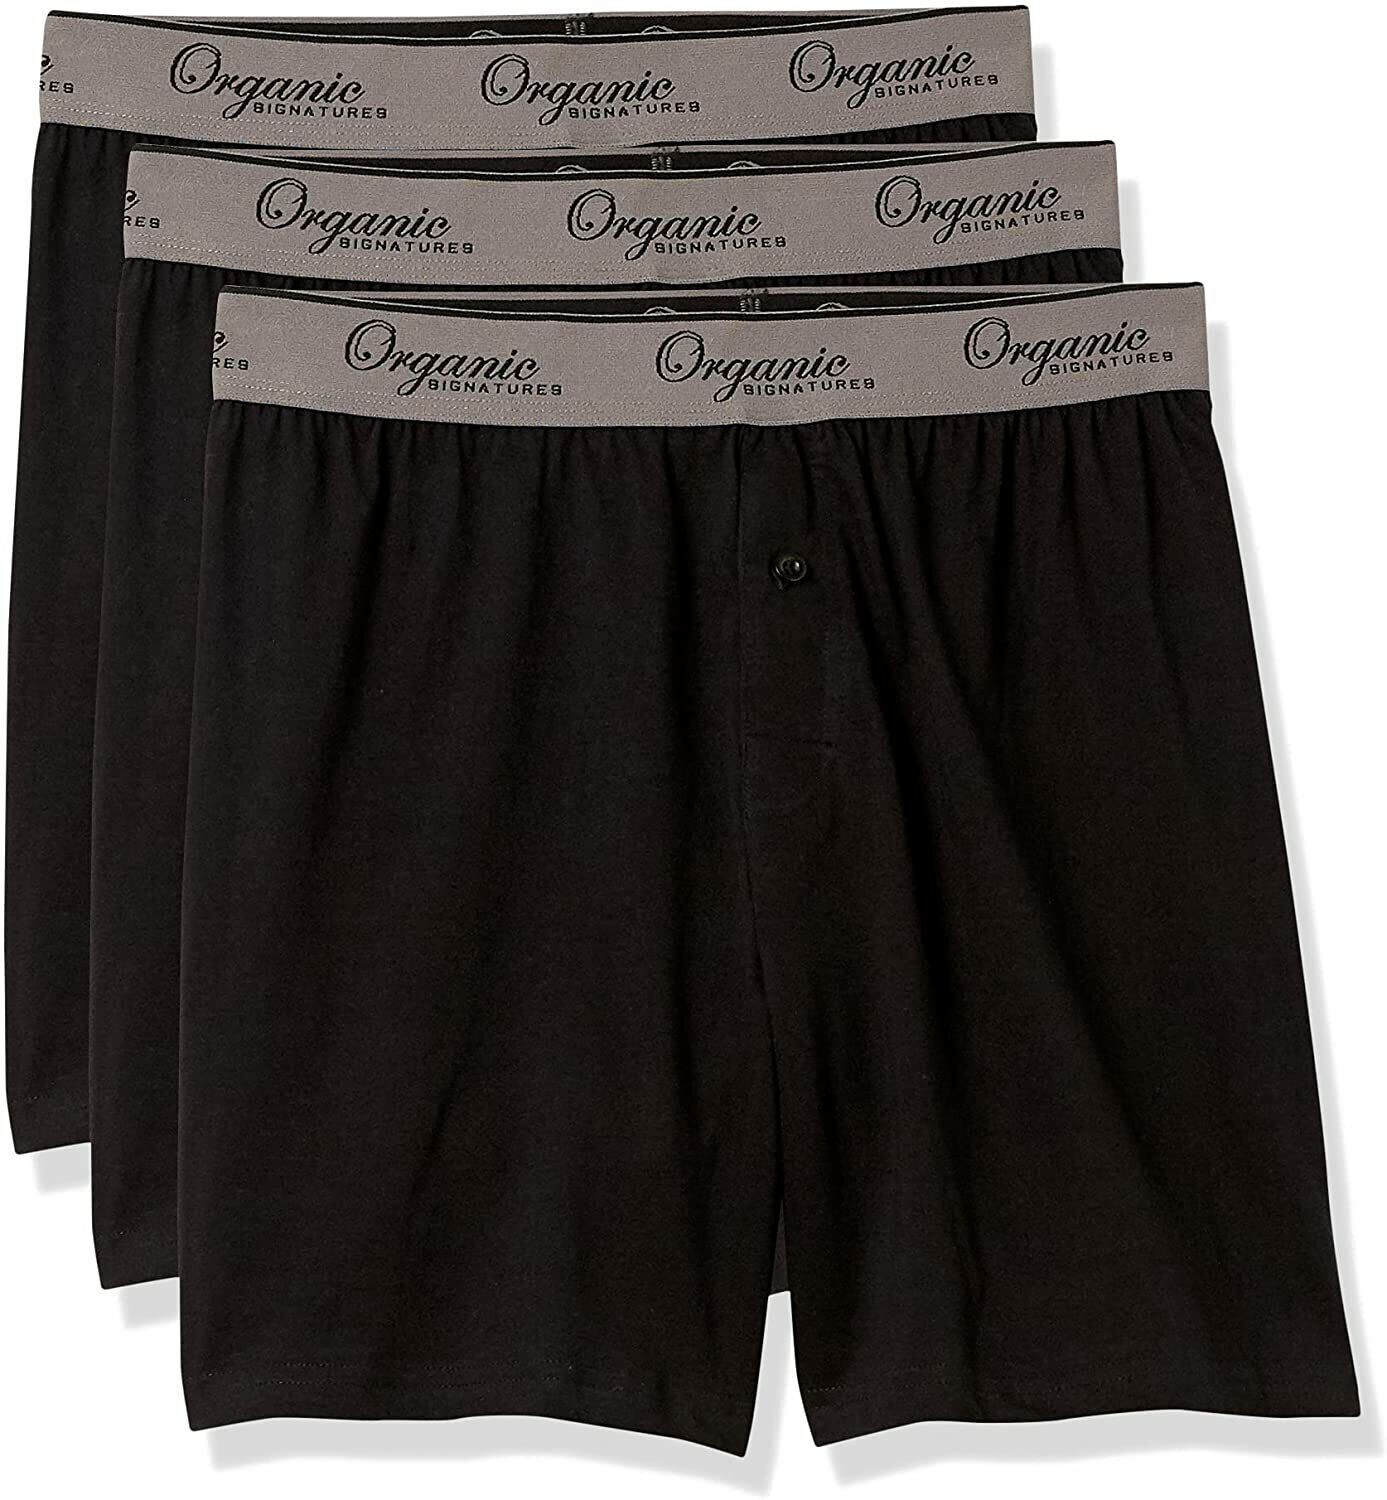 Organic Signatures Men's Boxers 100% Organic Cotton, Soft Boxers